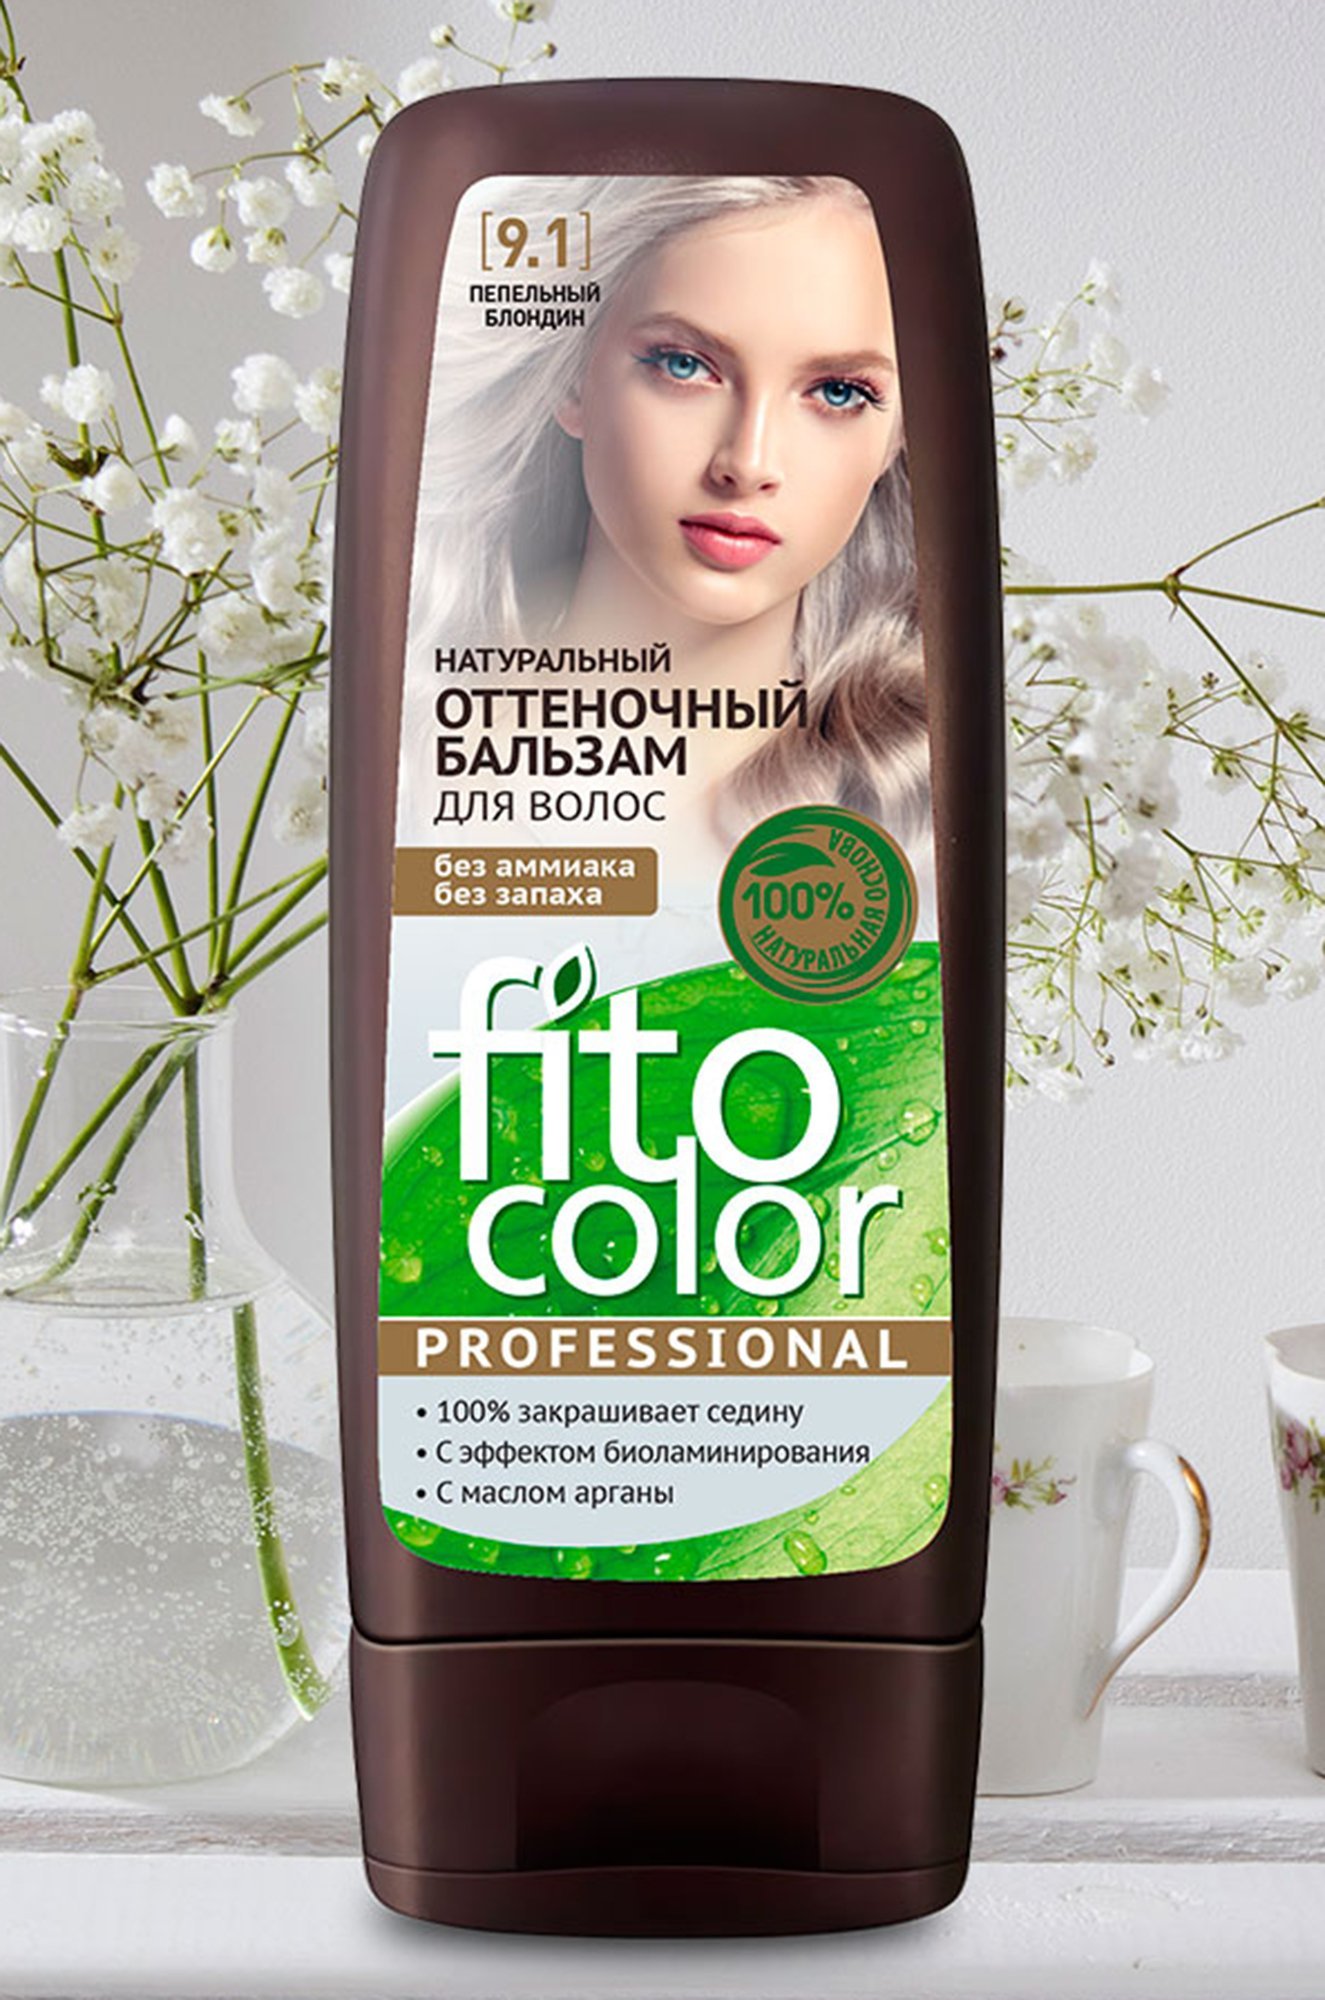 Palette оттеночный бальзам пепельный блонд на русые волосы фото до и после